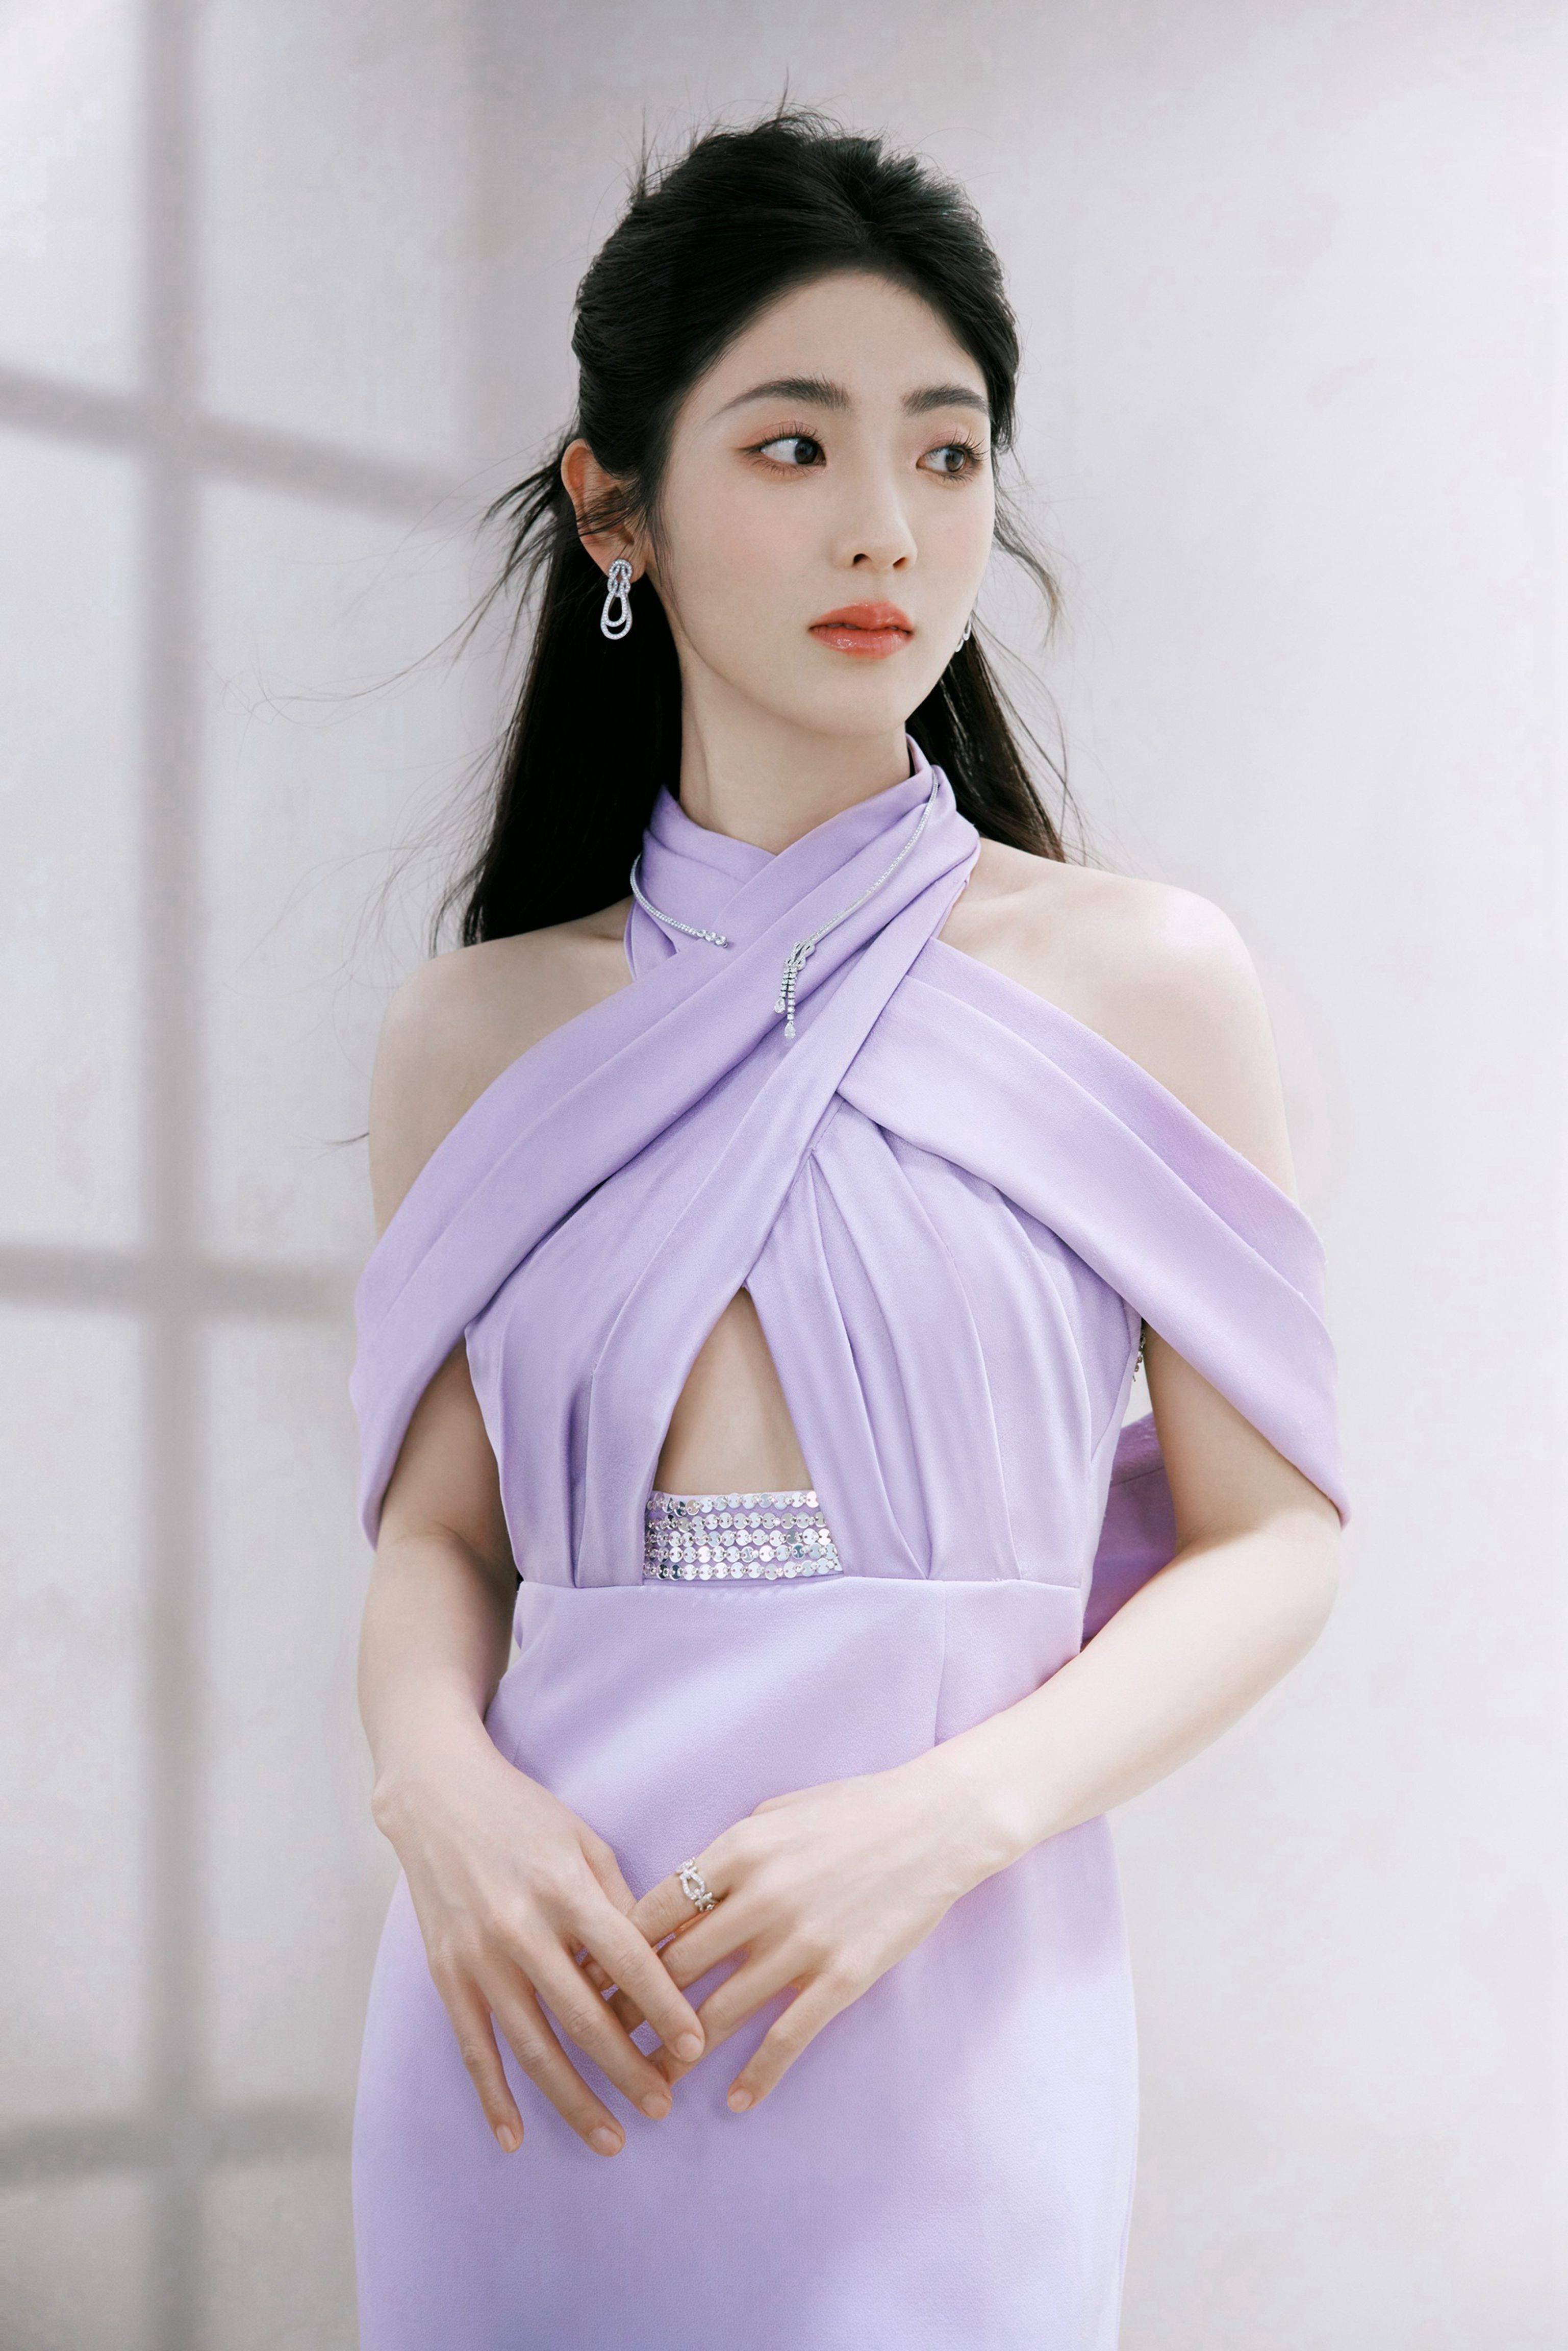 邢菲紫色连衣裙时尚写真